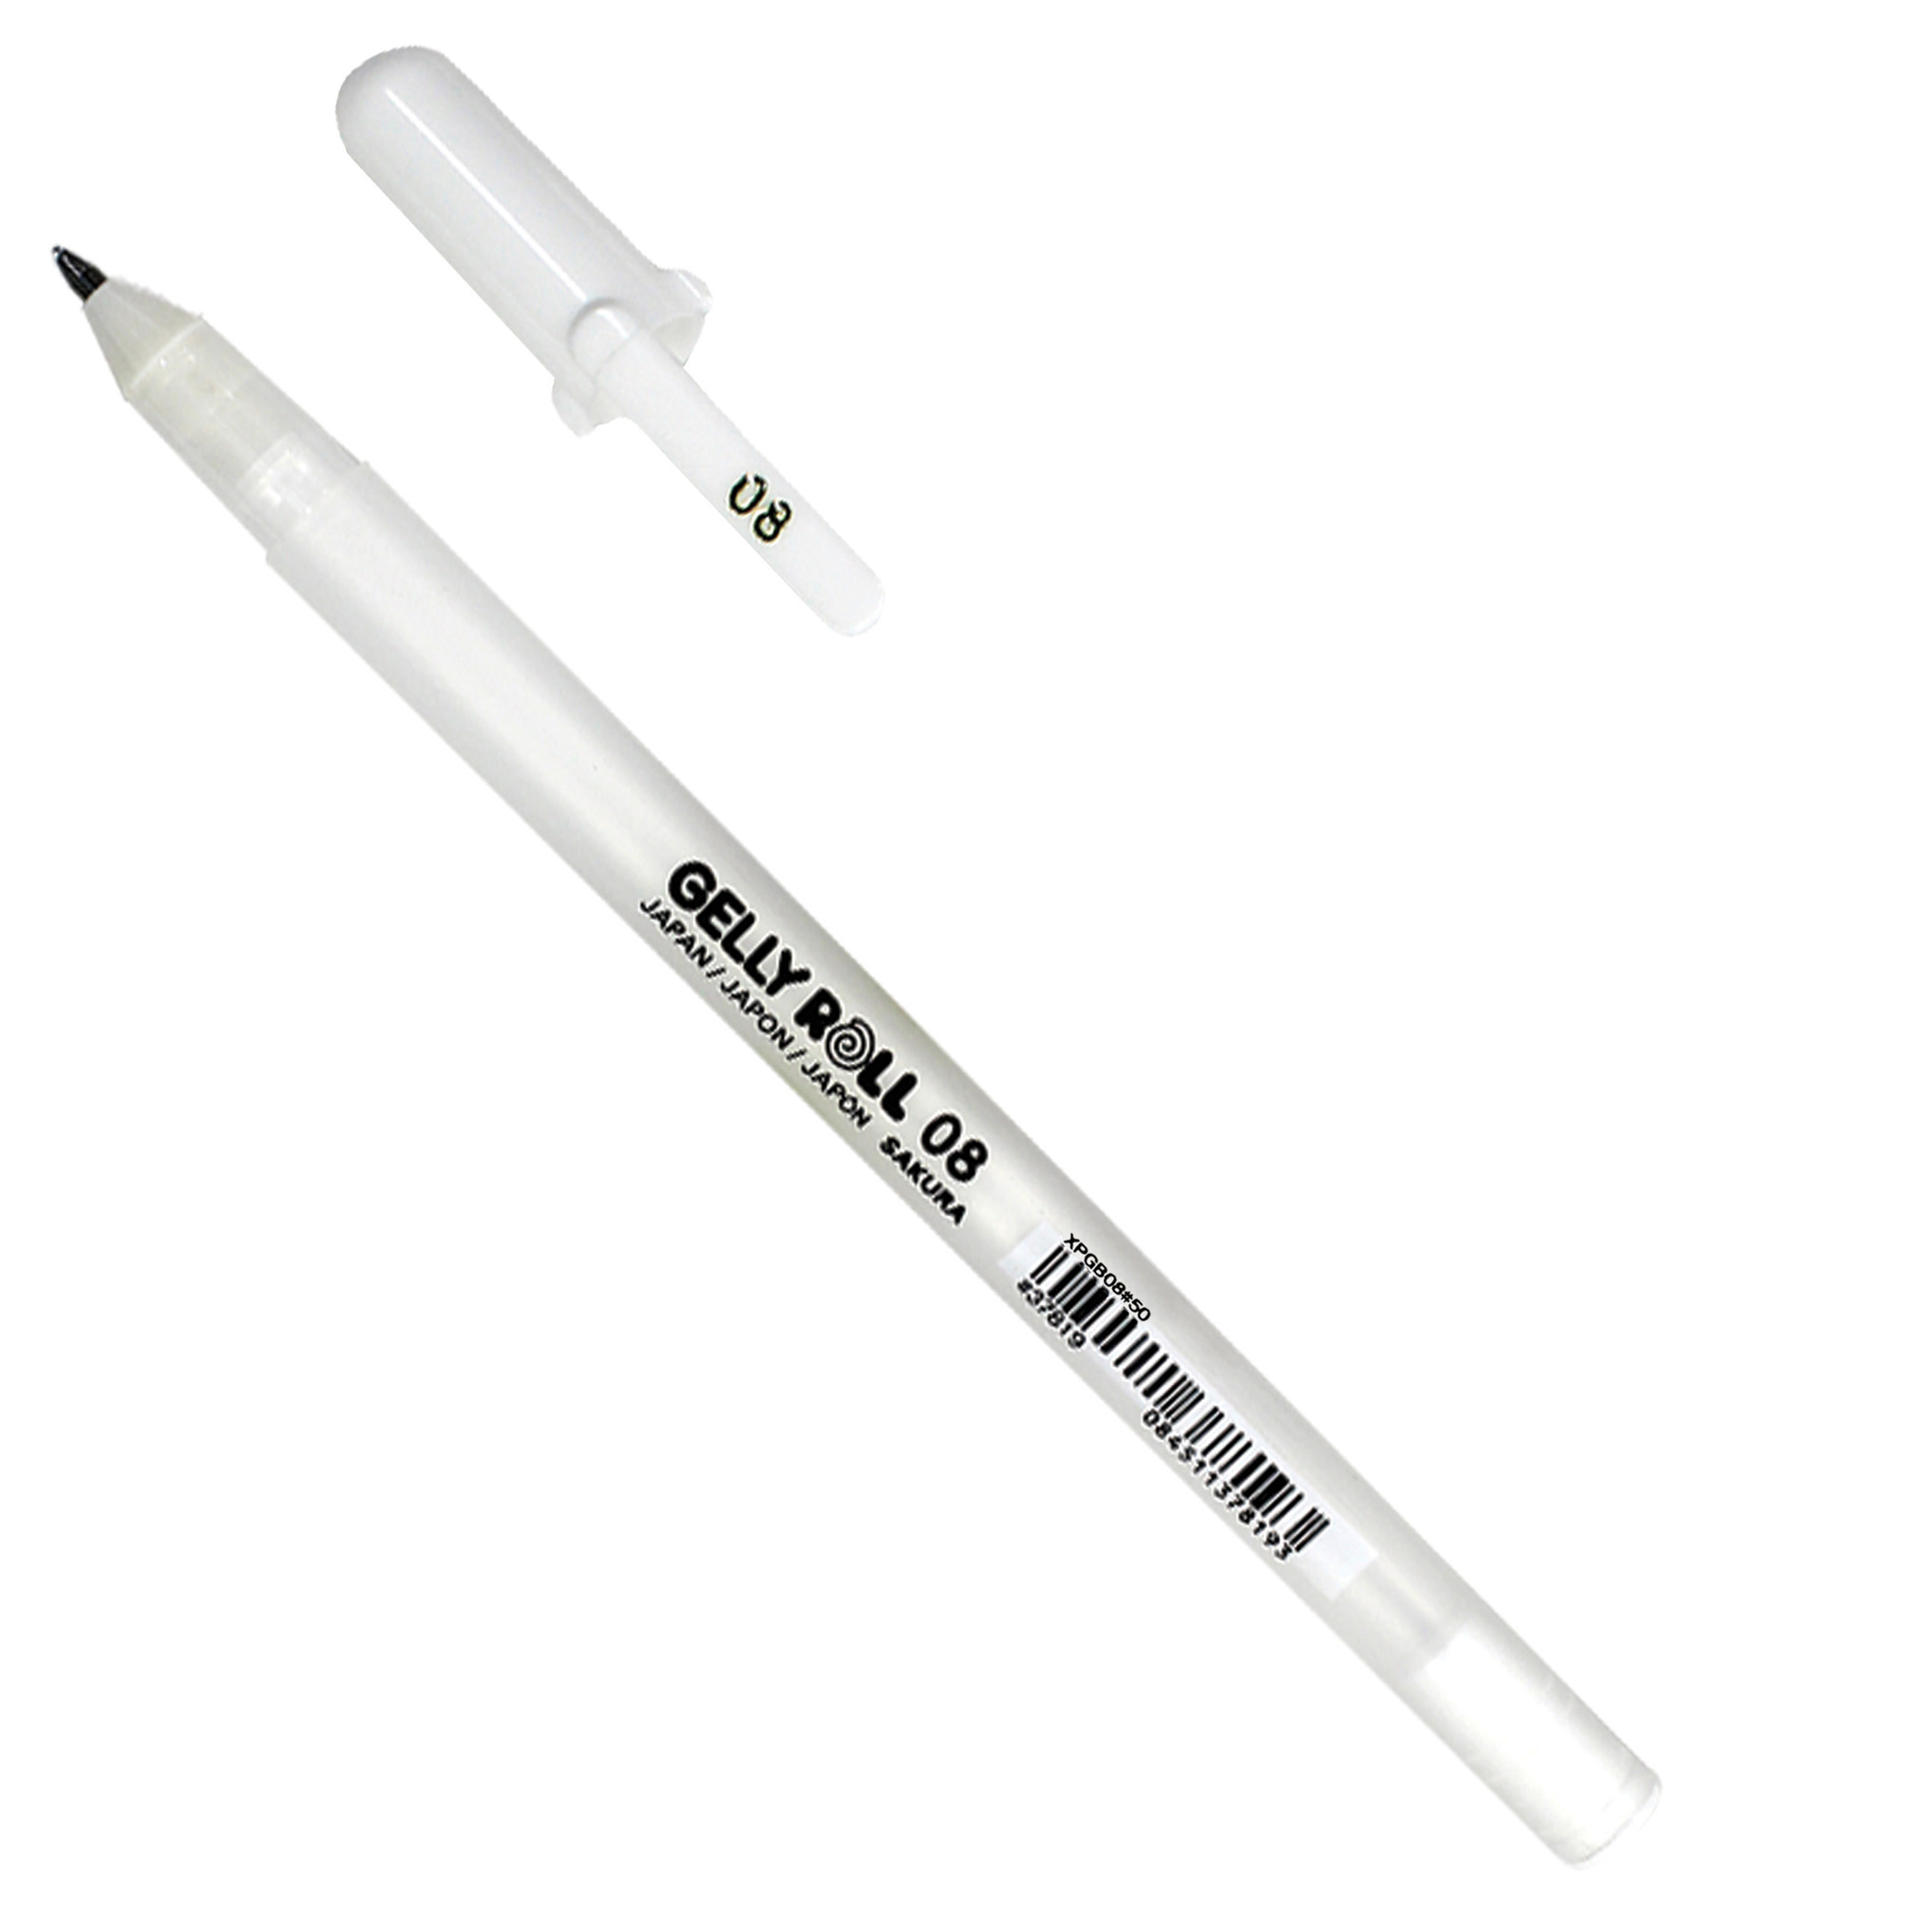 White Gelly Roll Glaze Pen